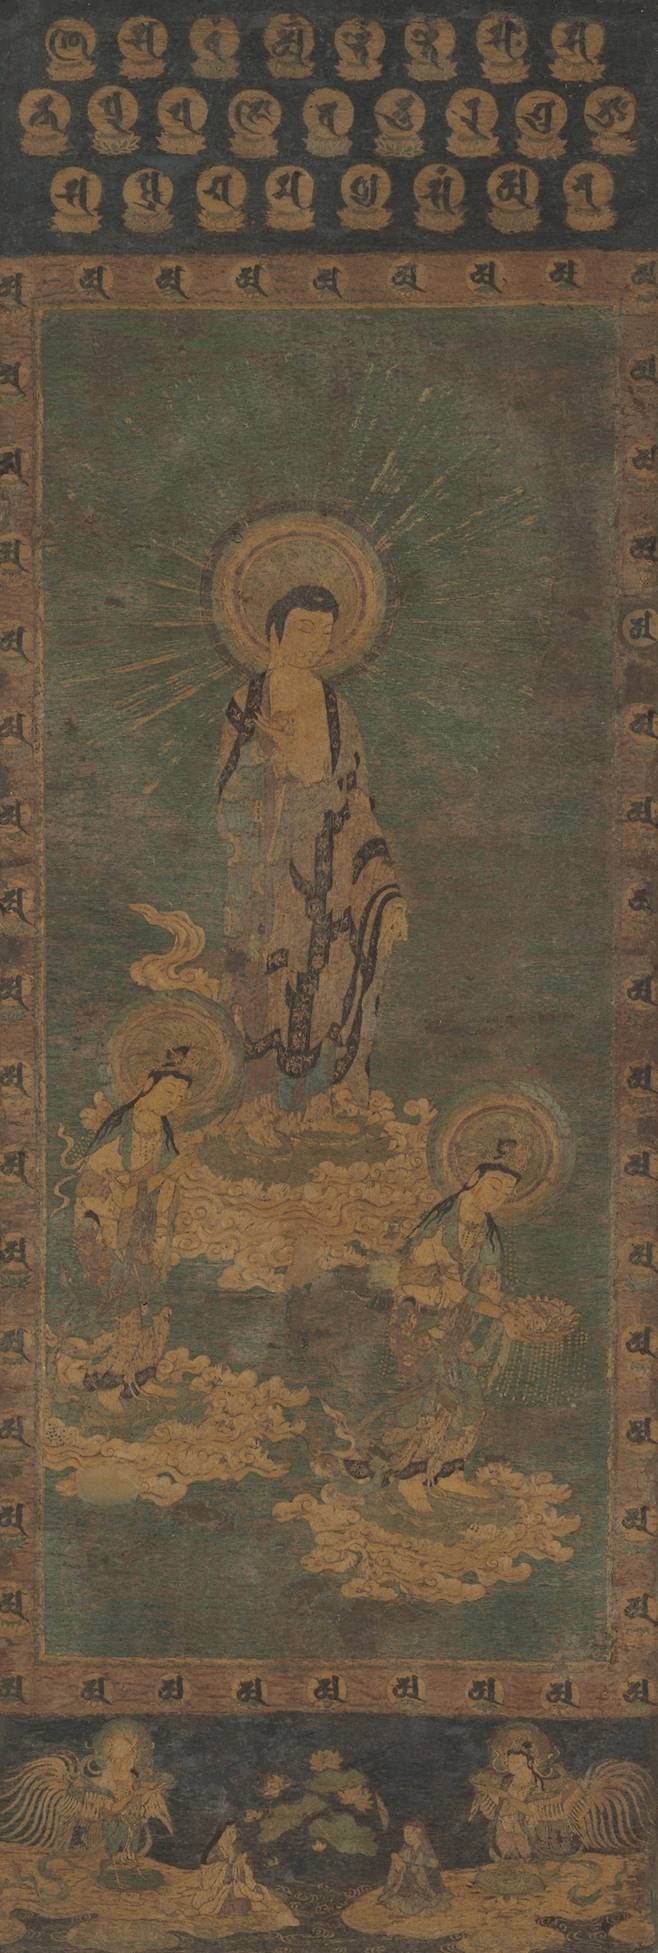 자수 아미타여래삼존내영도, 일본 가마쿠라 혹은 난보쿠초시대, 13-14세기, 평견에 자수, 전체 154.0x59.0cm 호곤지